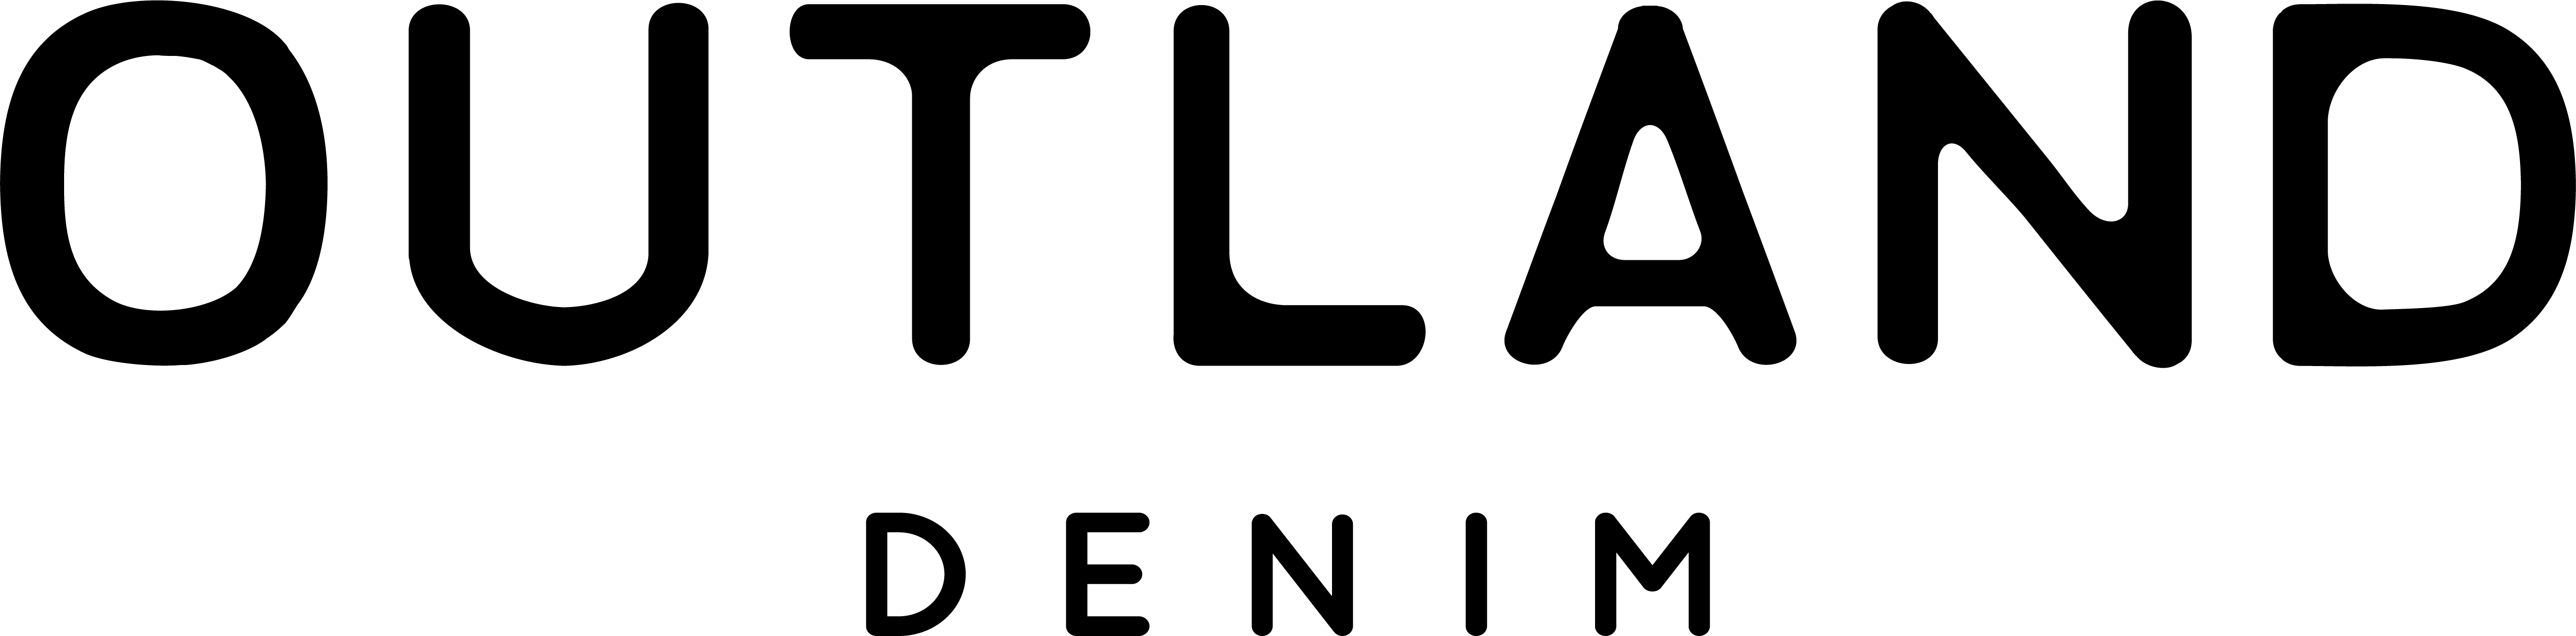 Outland Denim logo